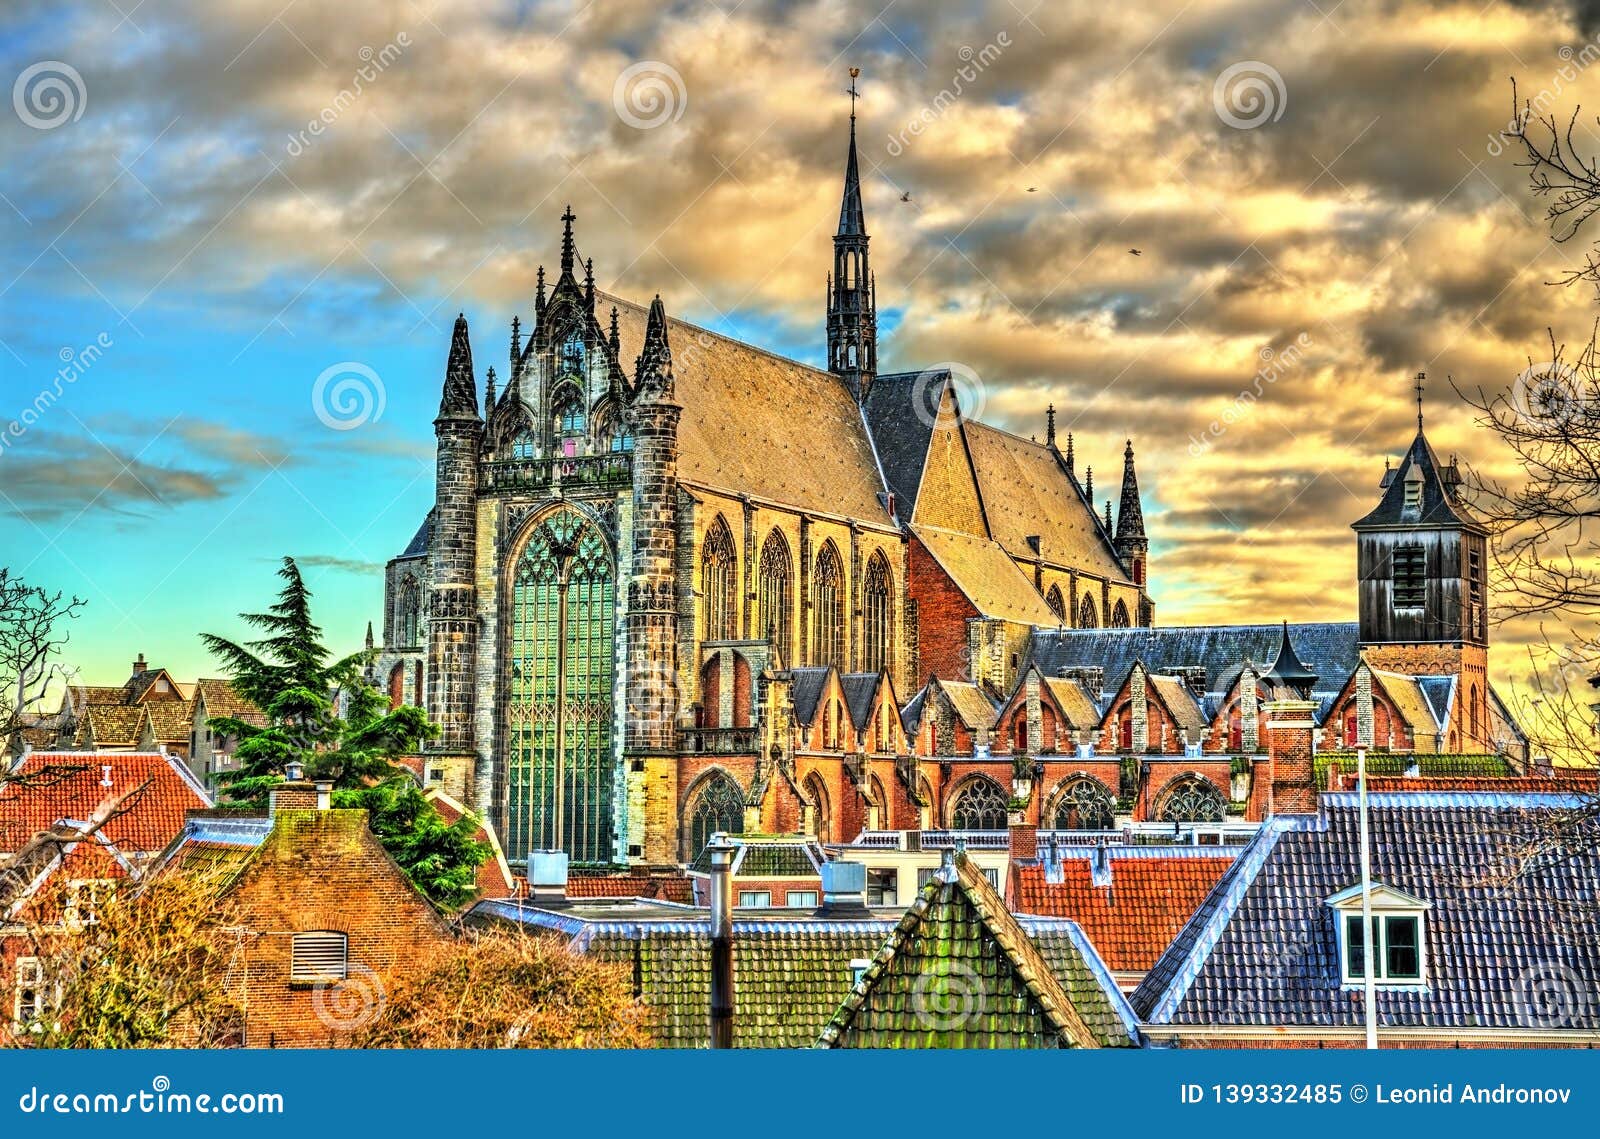 hooglandse kerk, a gothic church in leiden, the netherlands